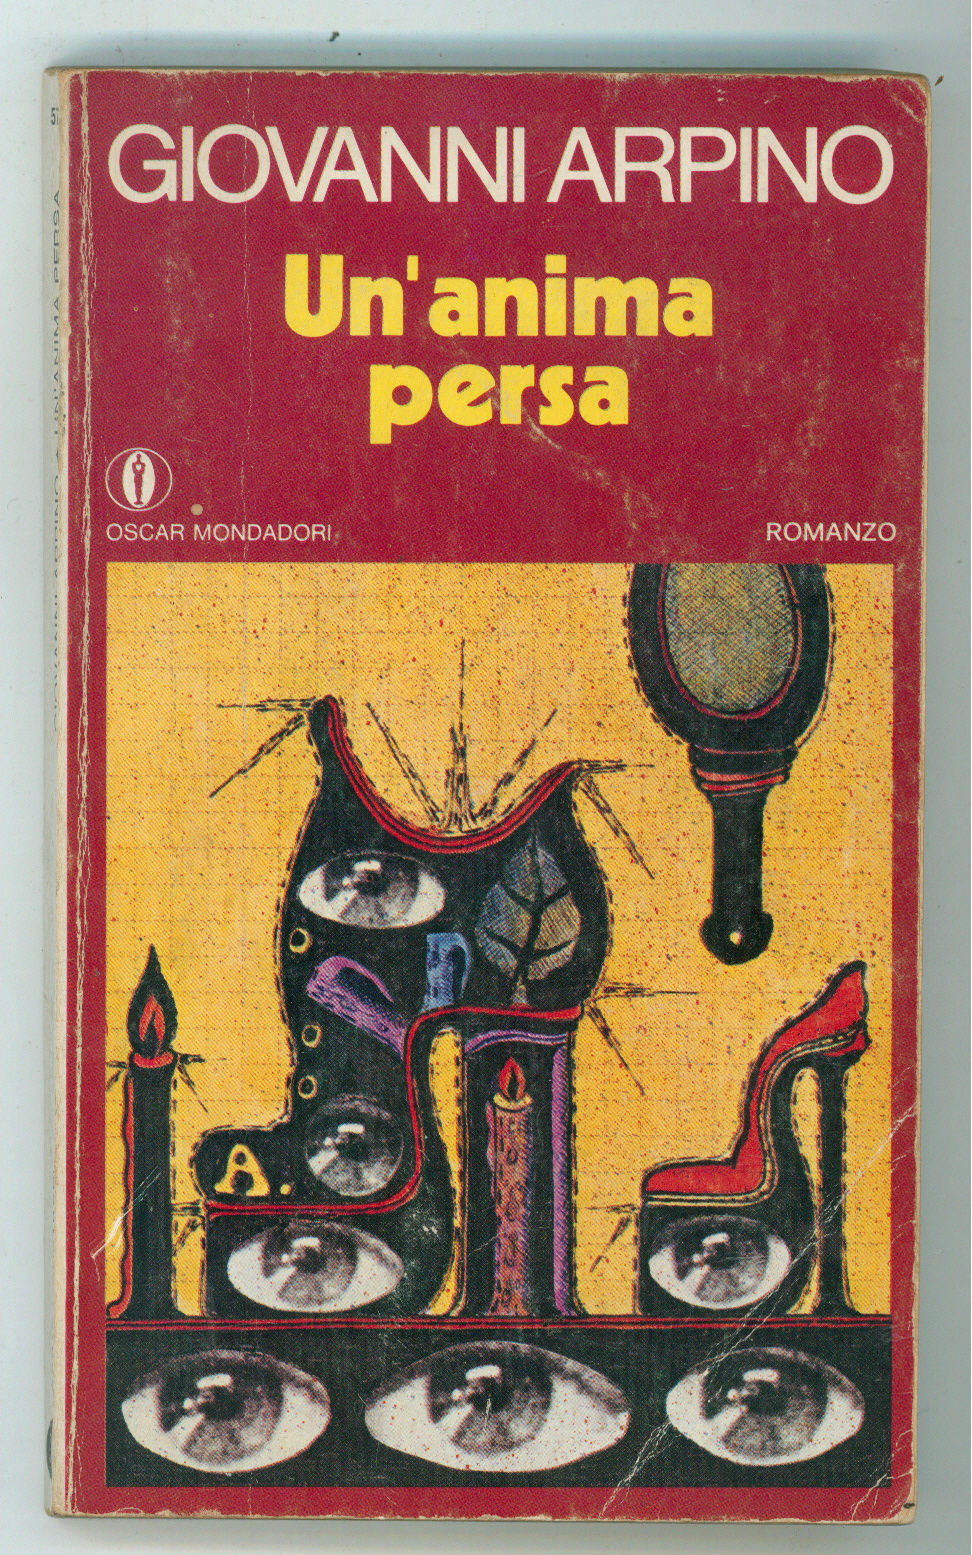 Copertina libro Arpino Un'anima_persa__di_Giovanni_Arpino__Mondadori__Milano_1974__copertina_di_Harloff.JPG-